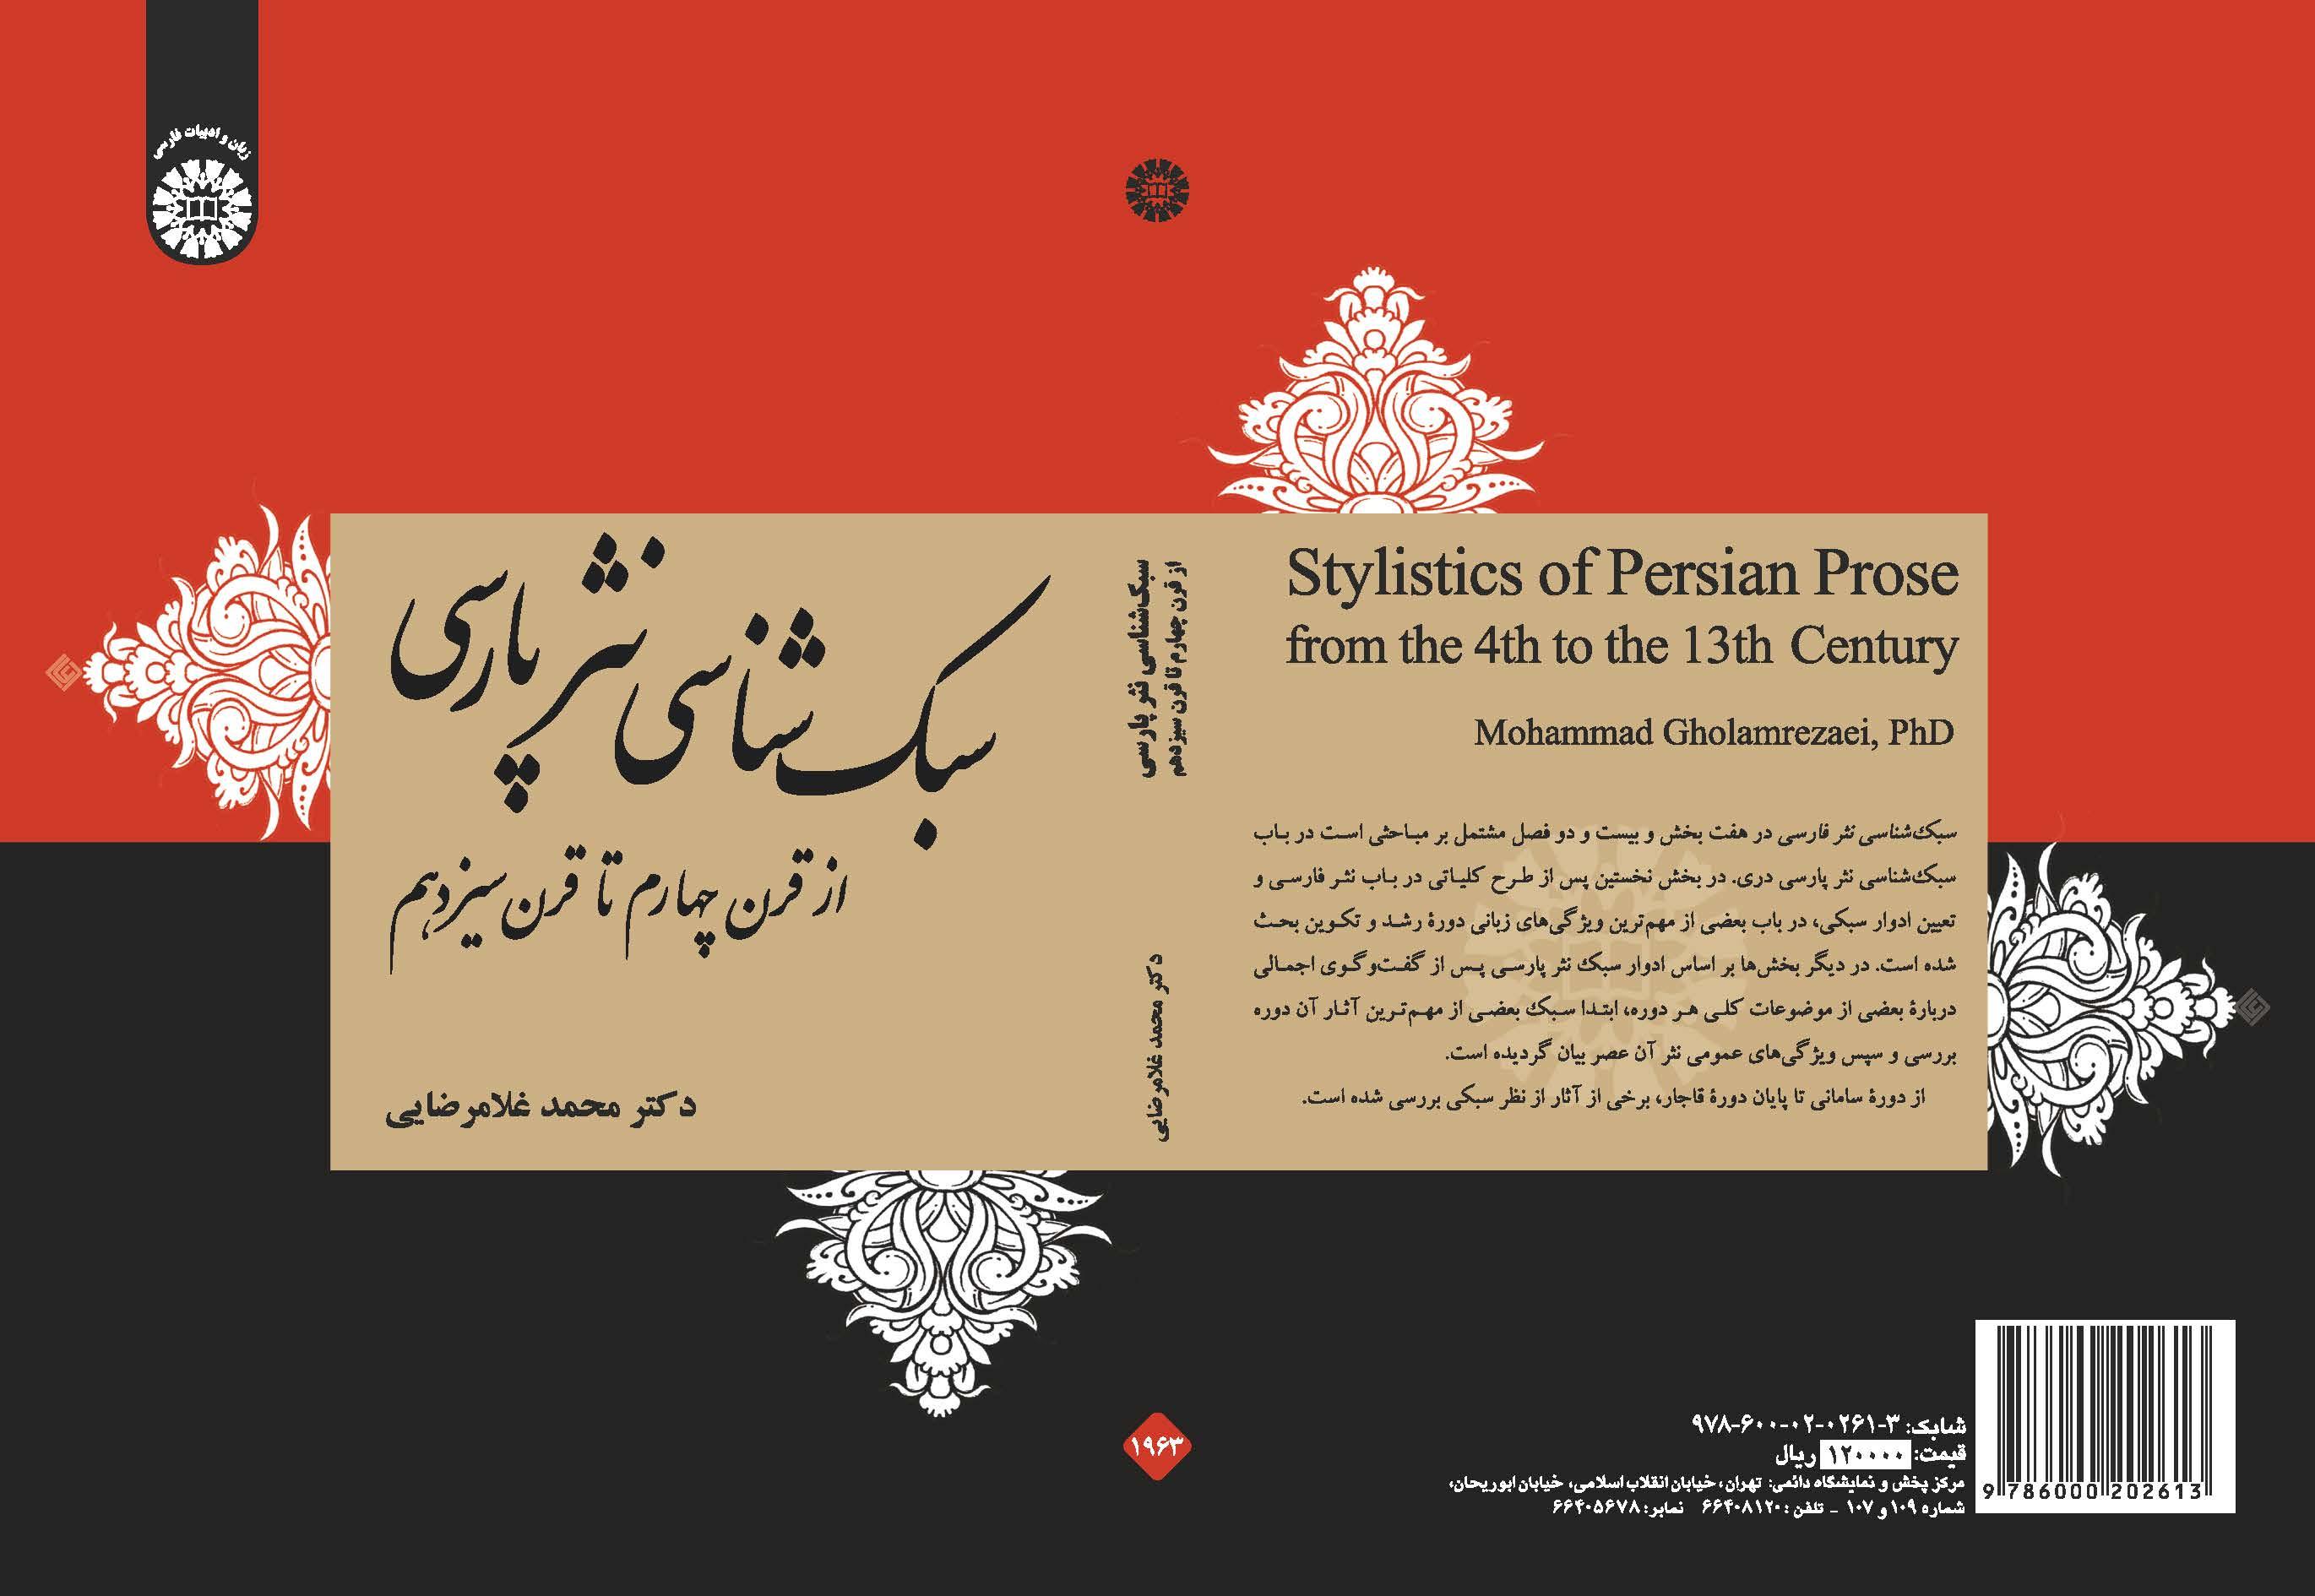 أسلوبية النثر الفارسي من القرن الرابع إلى القرن الثالث عشر